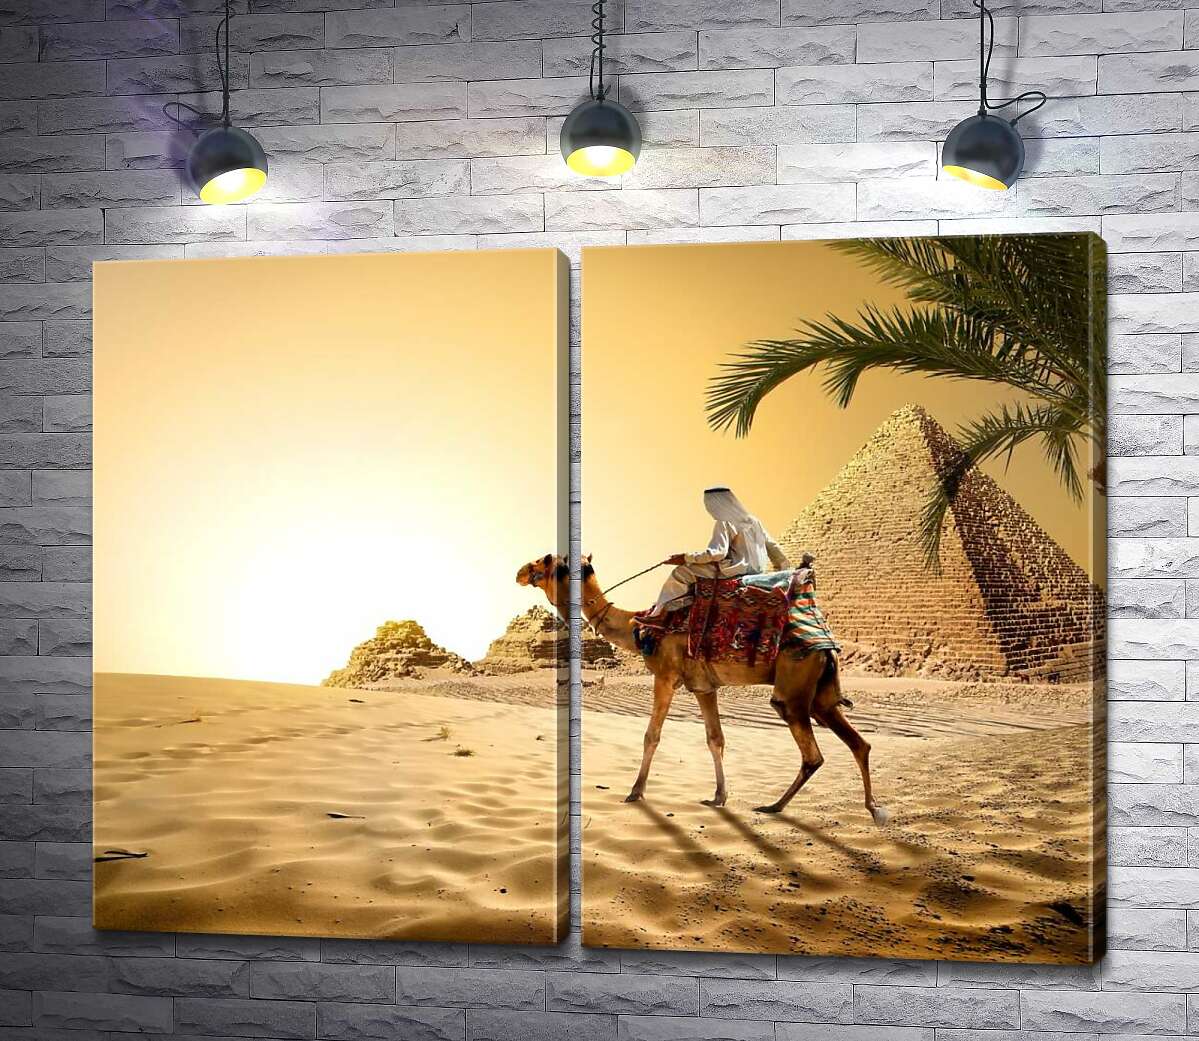 модульна картина Бедуїн верхи на верблюді проїжджає повз єгипетські пірамід